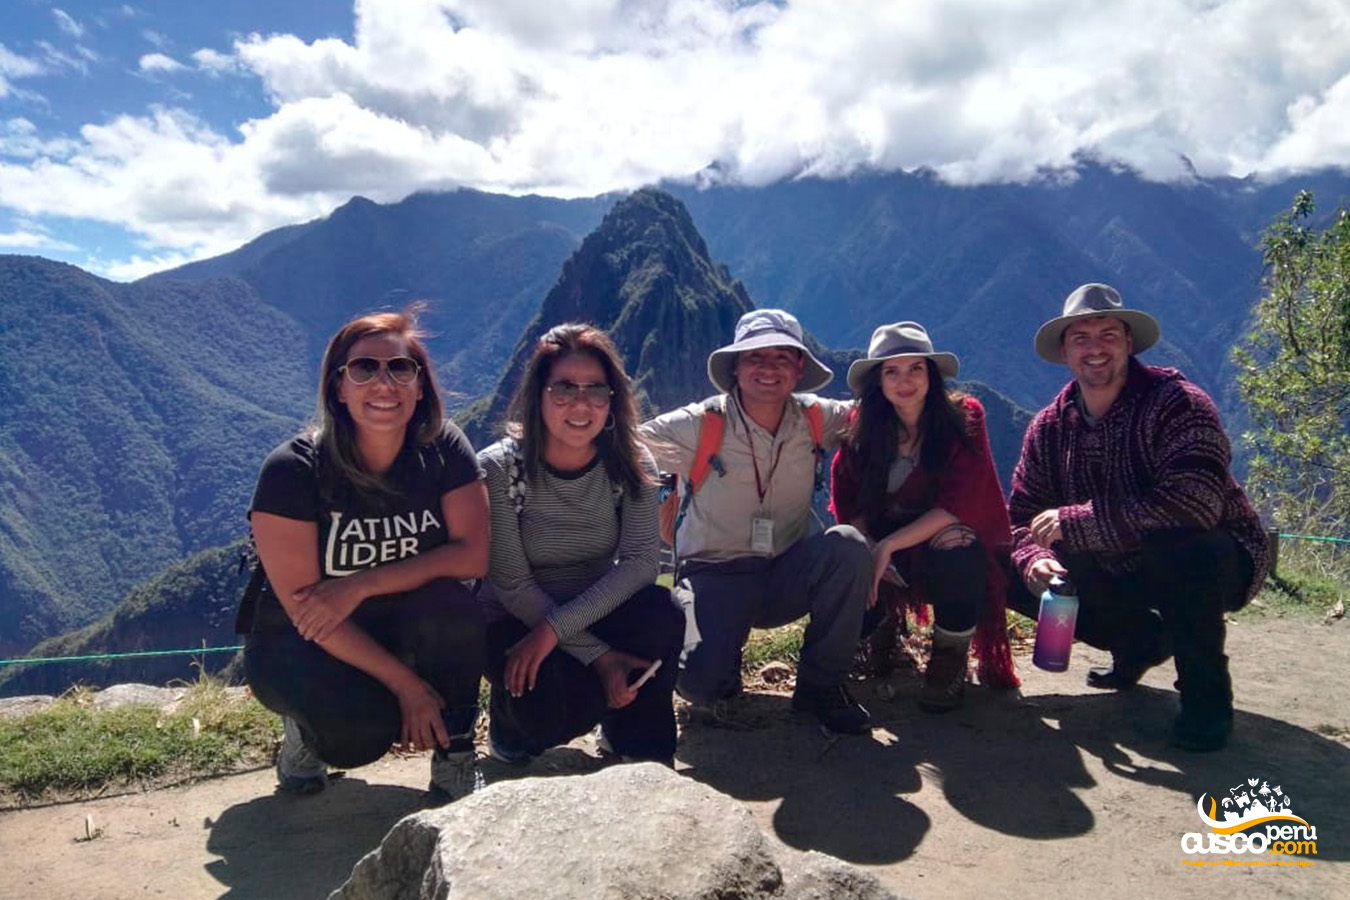 Guia de turismo com um grupo de turistas em Machu Picchu. Fonte: CuscoPeru.com